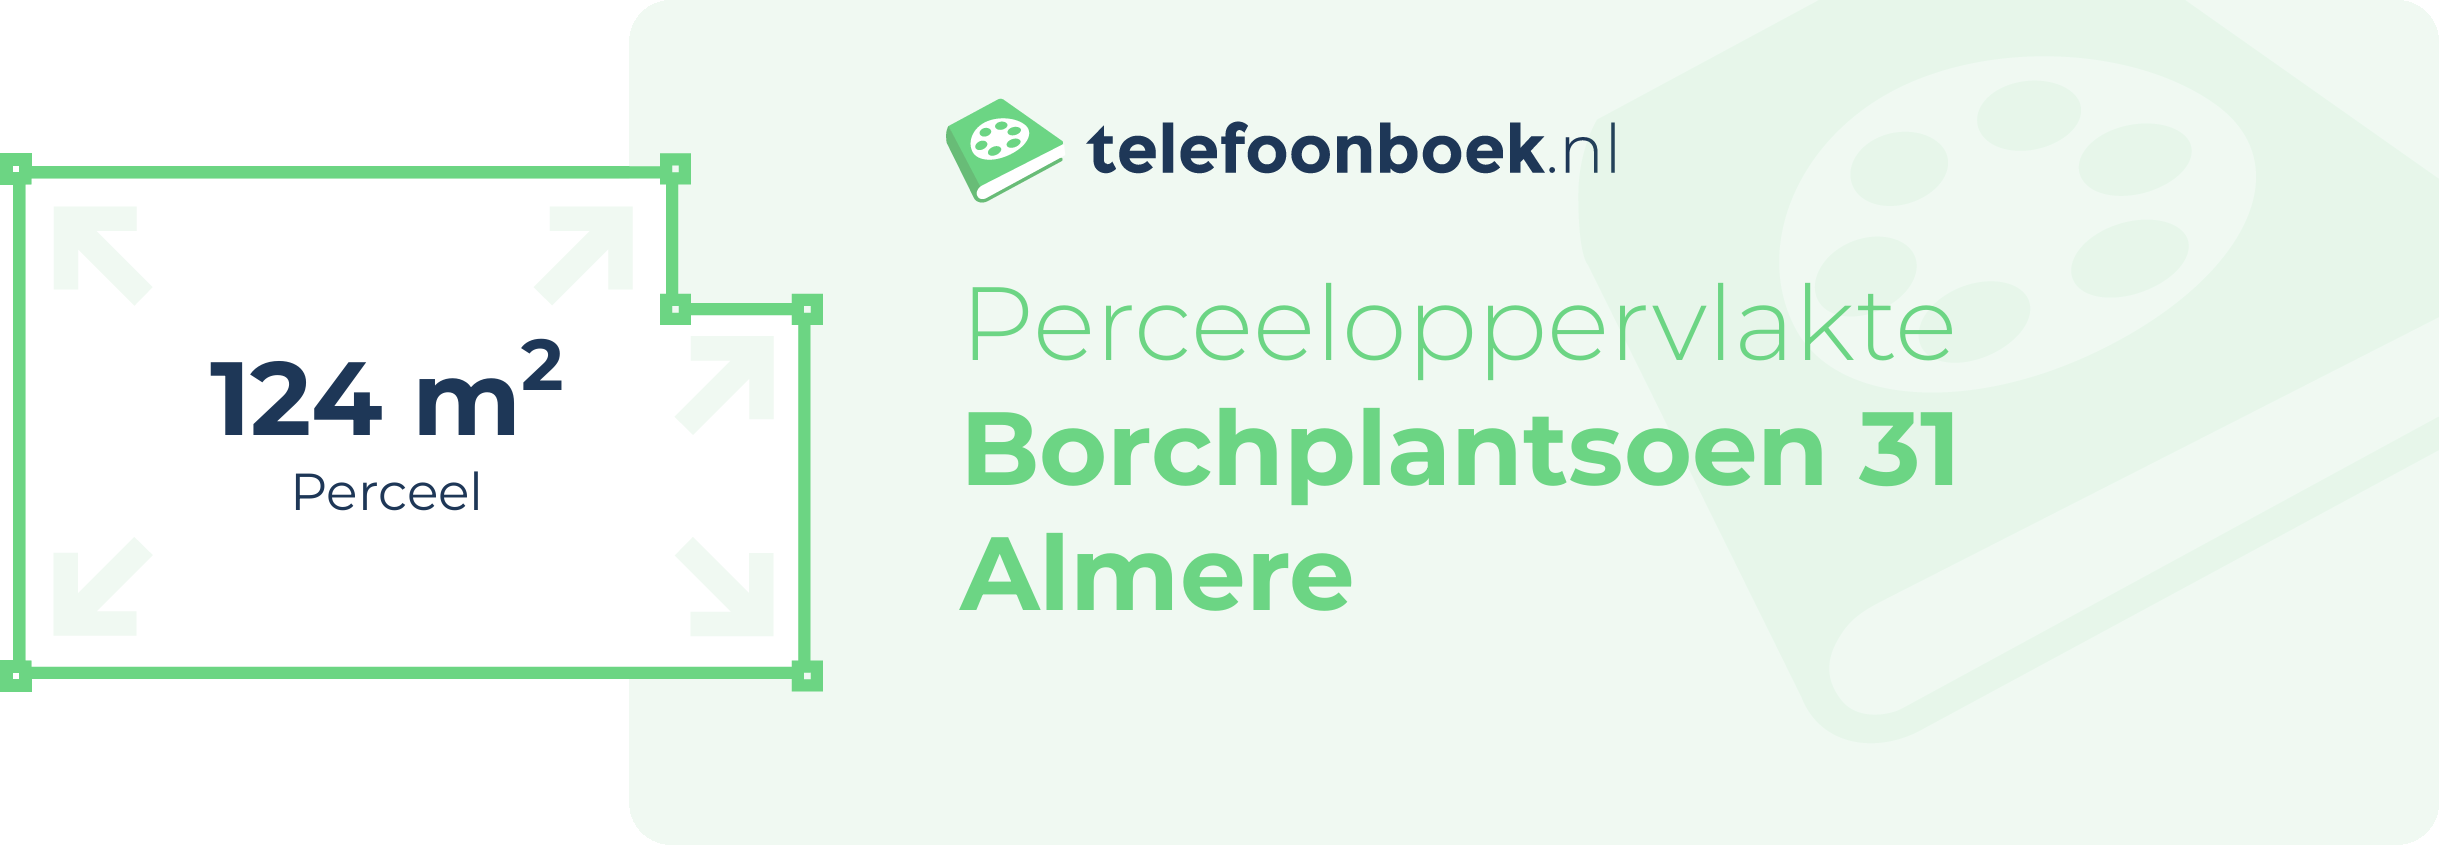 Perceeloppervlakte Borchplantsoen 31 Almere